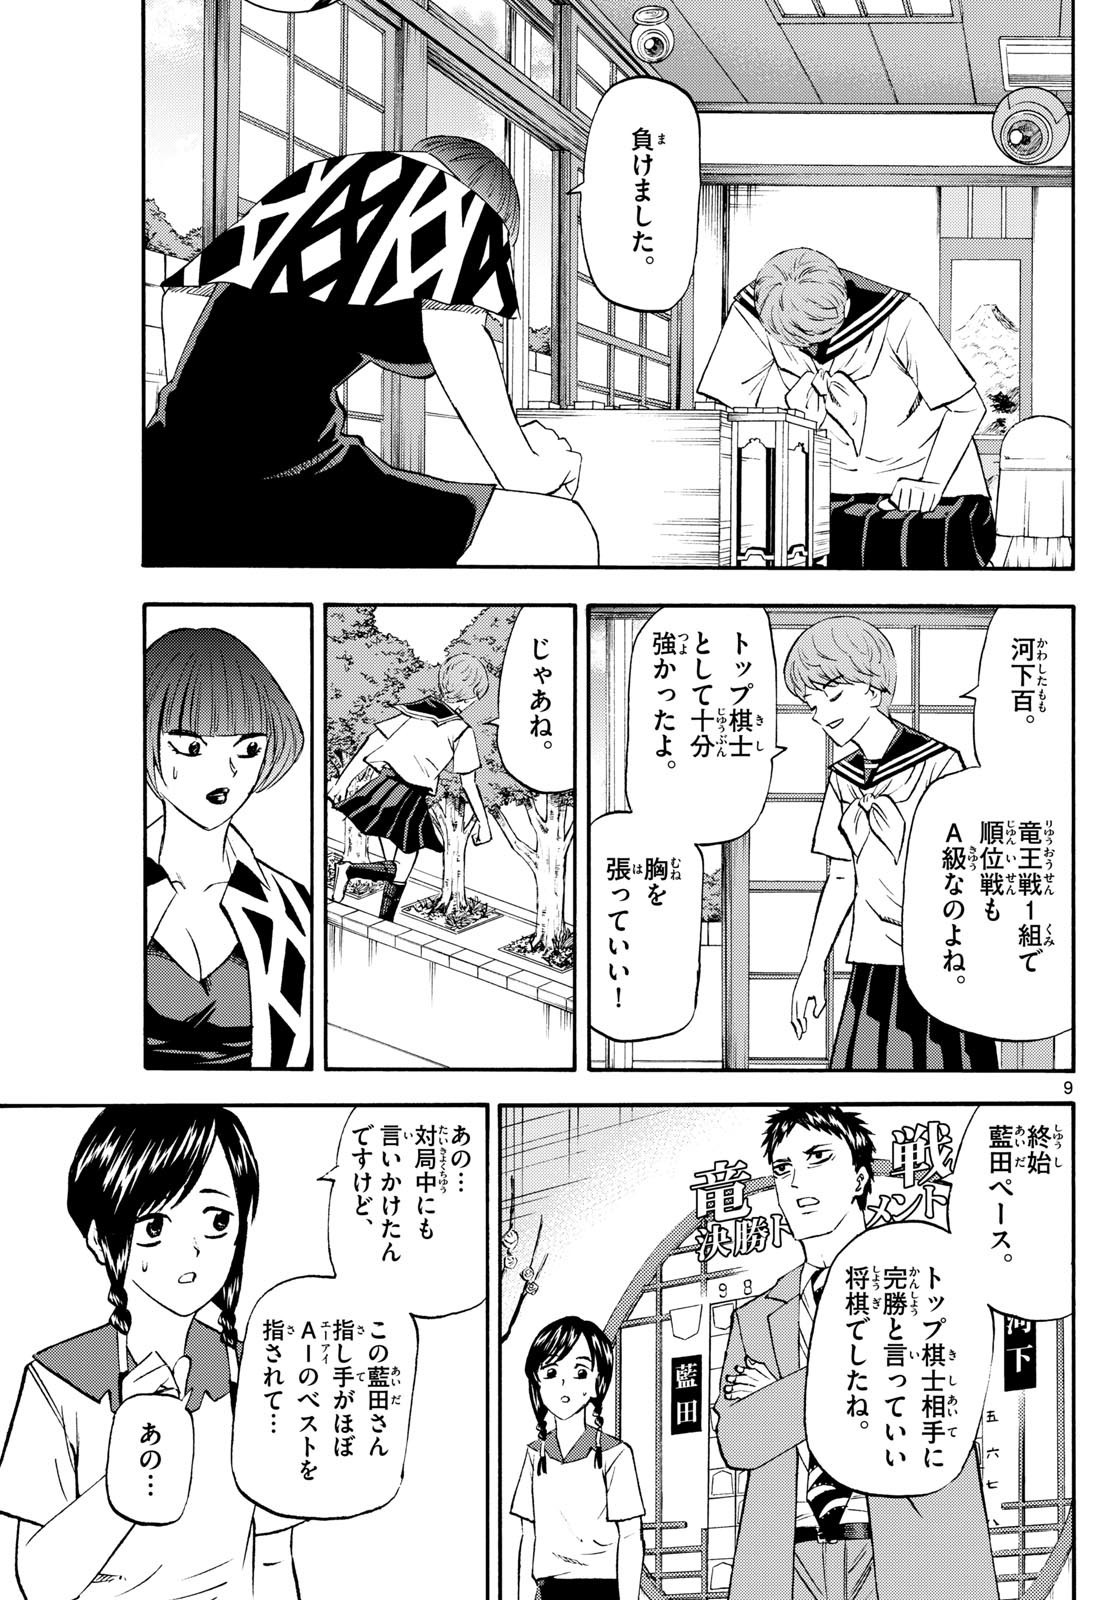 Ryu-to-Ichigo - Chapter 201 - Page 9